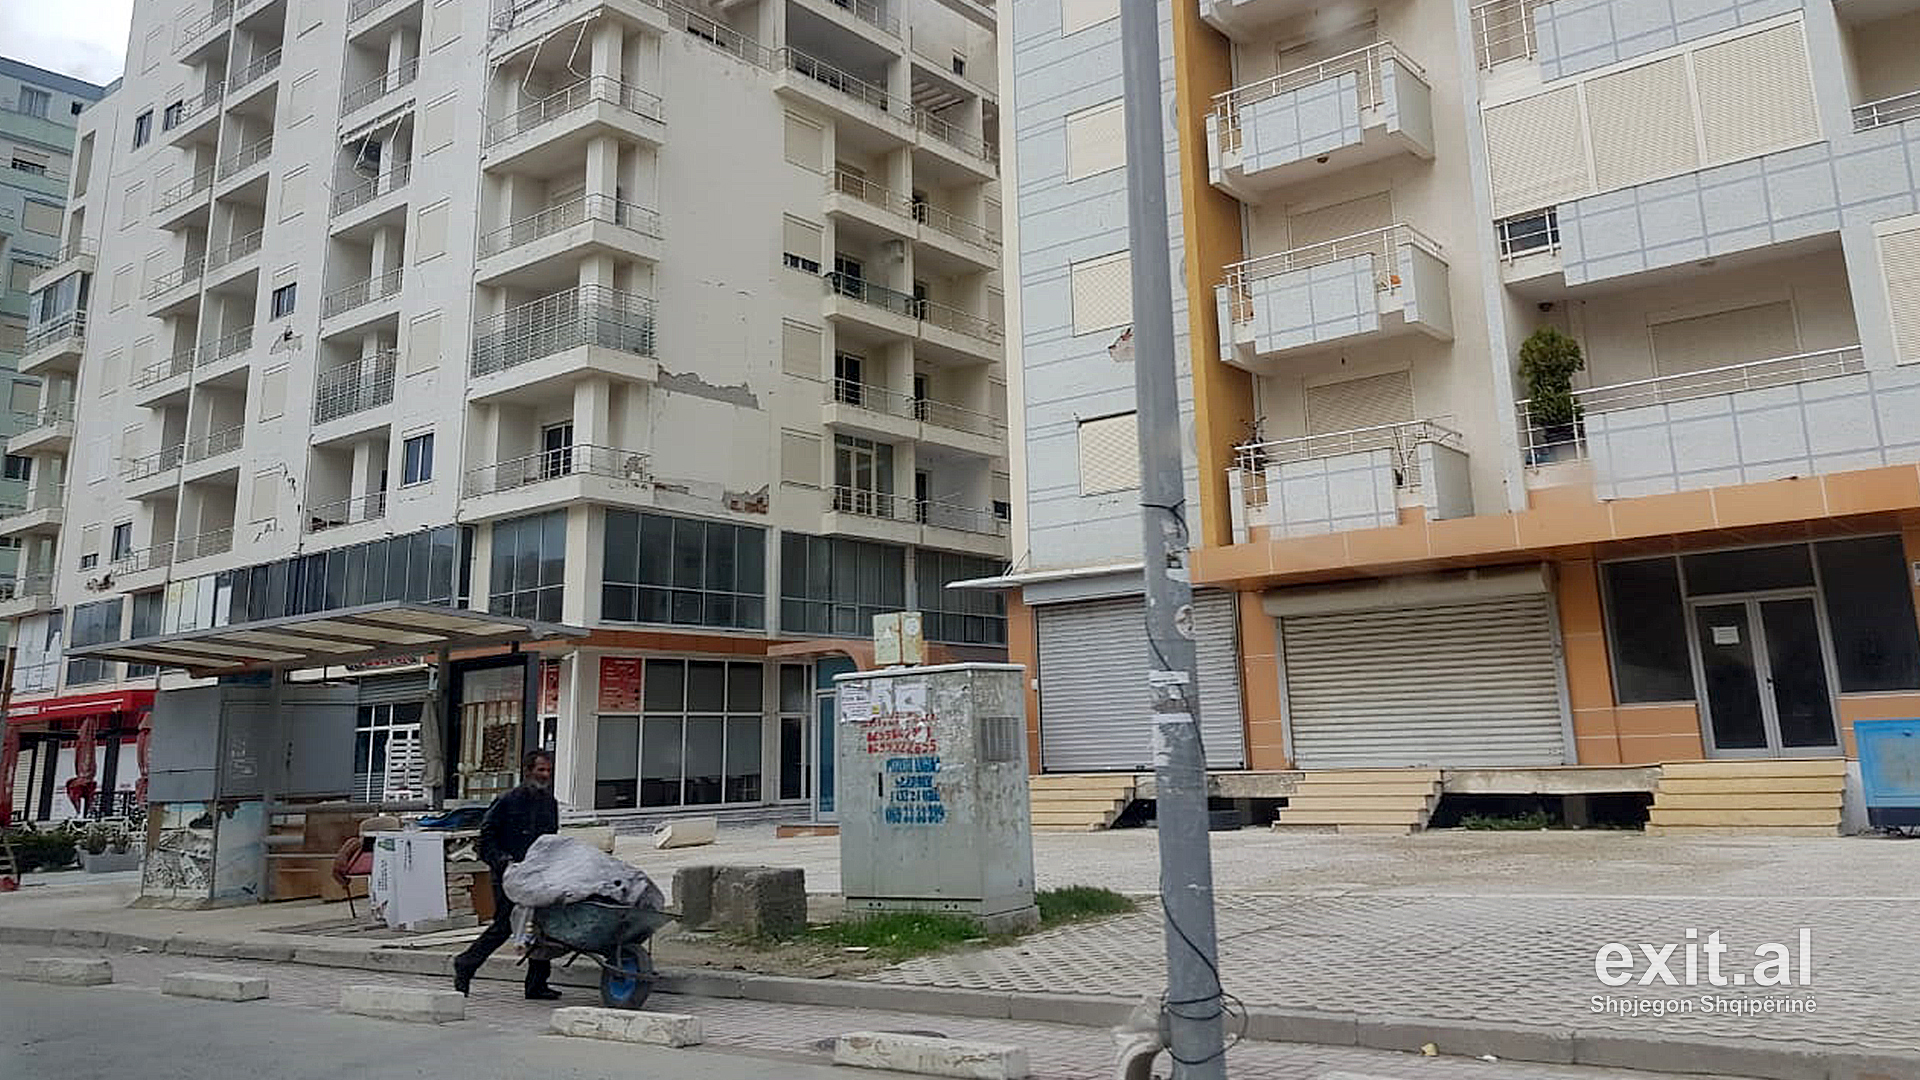 Në Durrës dhe Krujë shemben 17 ndërtesa, 2600 të shpërngulur nëpër hotele